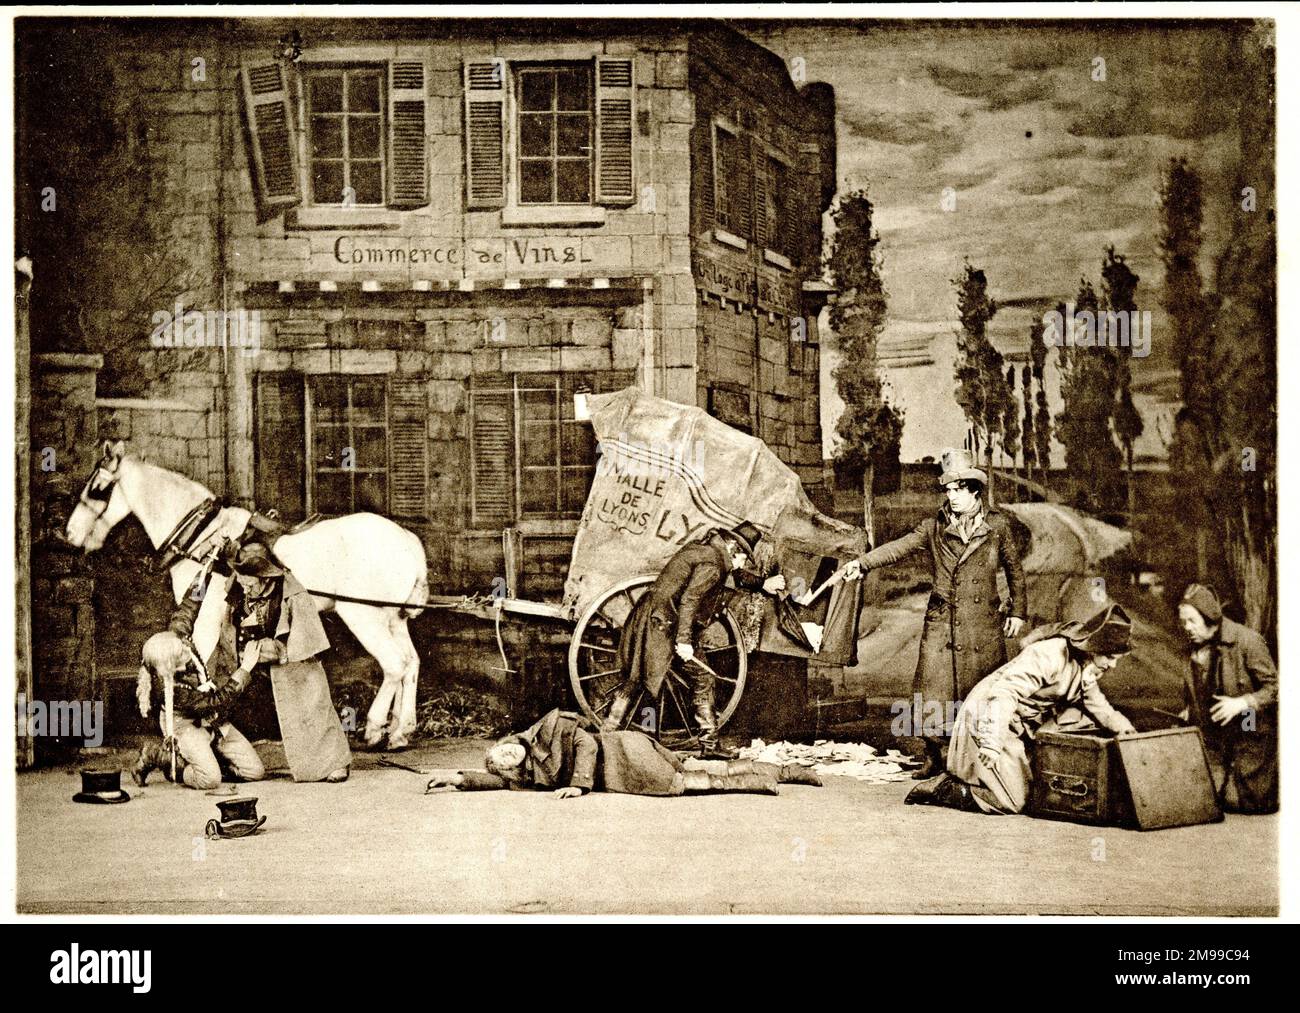 Der Straßenraub in einem Stück, The Lyons Mail, geschrieben von Charles Reade im Jahr 1854, produziert im Shaftesbury Theatre, London, im Jahr 1909 - basierend auf einem echten Vorfall während der Französischen Revolution (27-28. April 1796), als ein Postbus außerhalb von Paris überfallen wurde, Geld gestohlen wurde und Menschen getötet wurden. Stockfoto